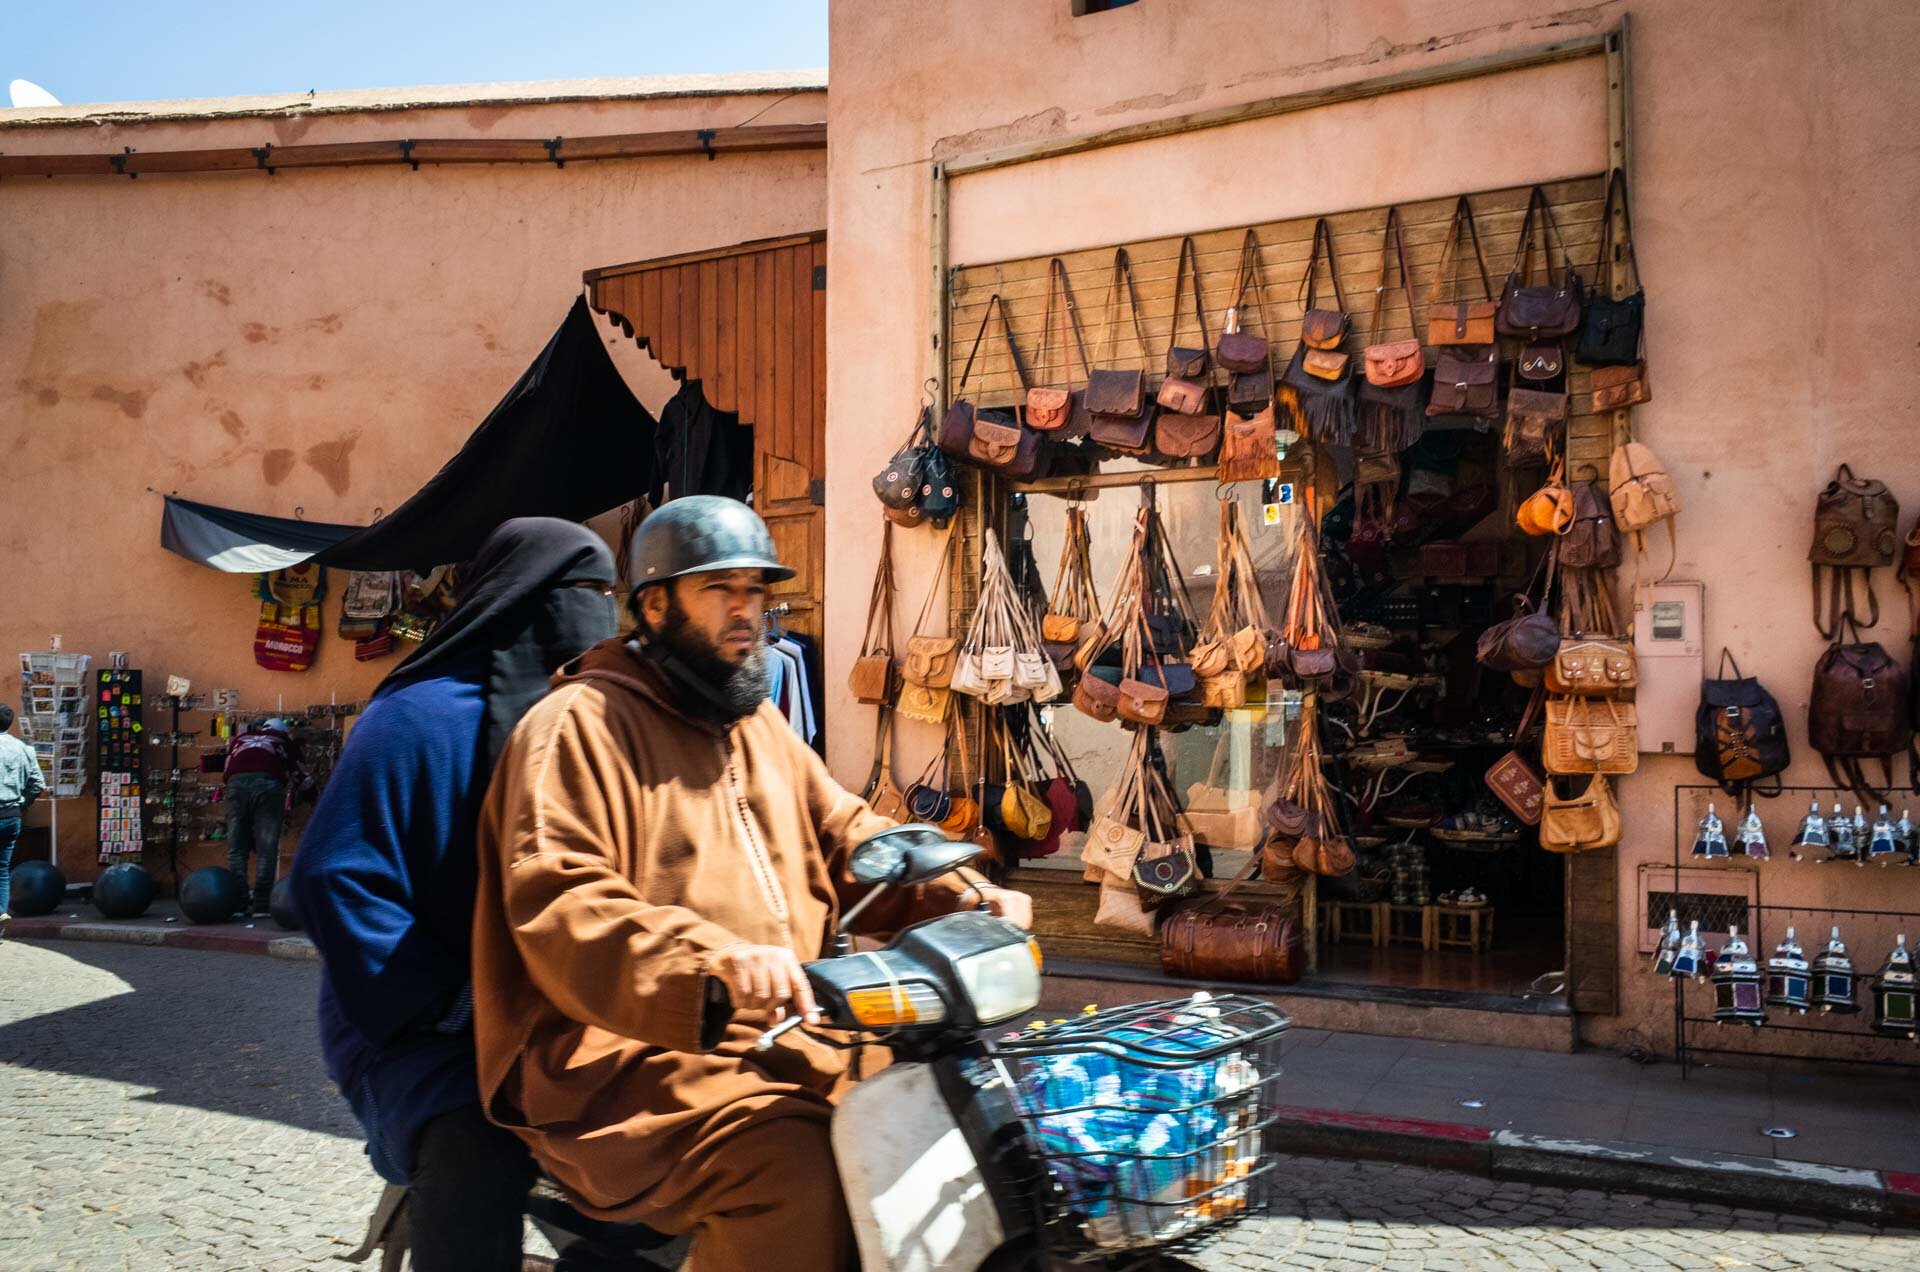 Marocco, marocco on the road, viaggio in marocco, marrakech, medina, bazar, viaggio di coppia, viaggo in marocco itinerario, marrakech marocco, marrakech riad, marrakech hotel, marrakech cosa vedere, marrakech cosa fare-33.jpg